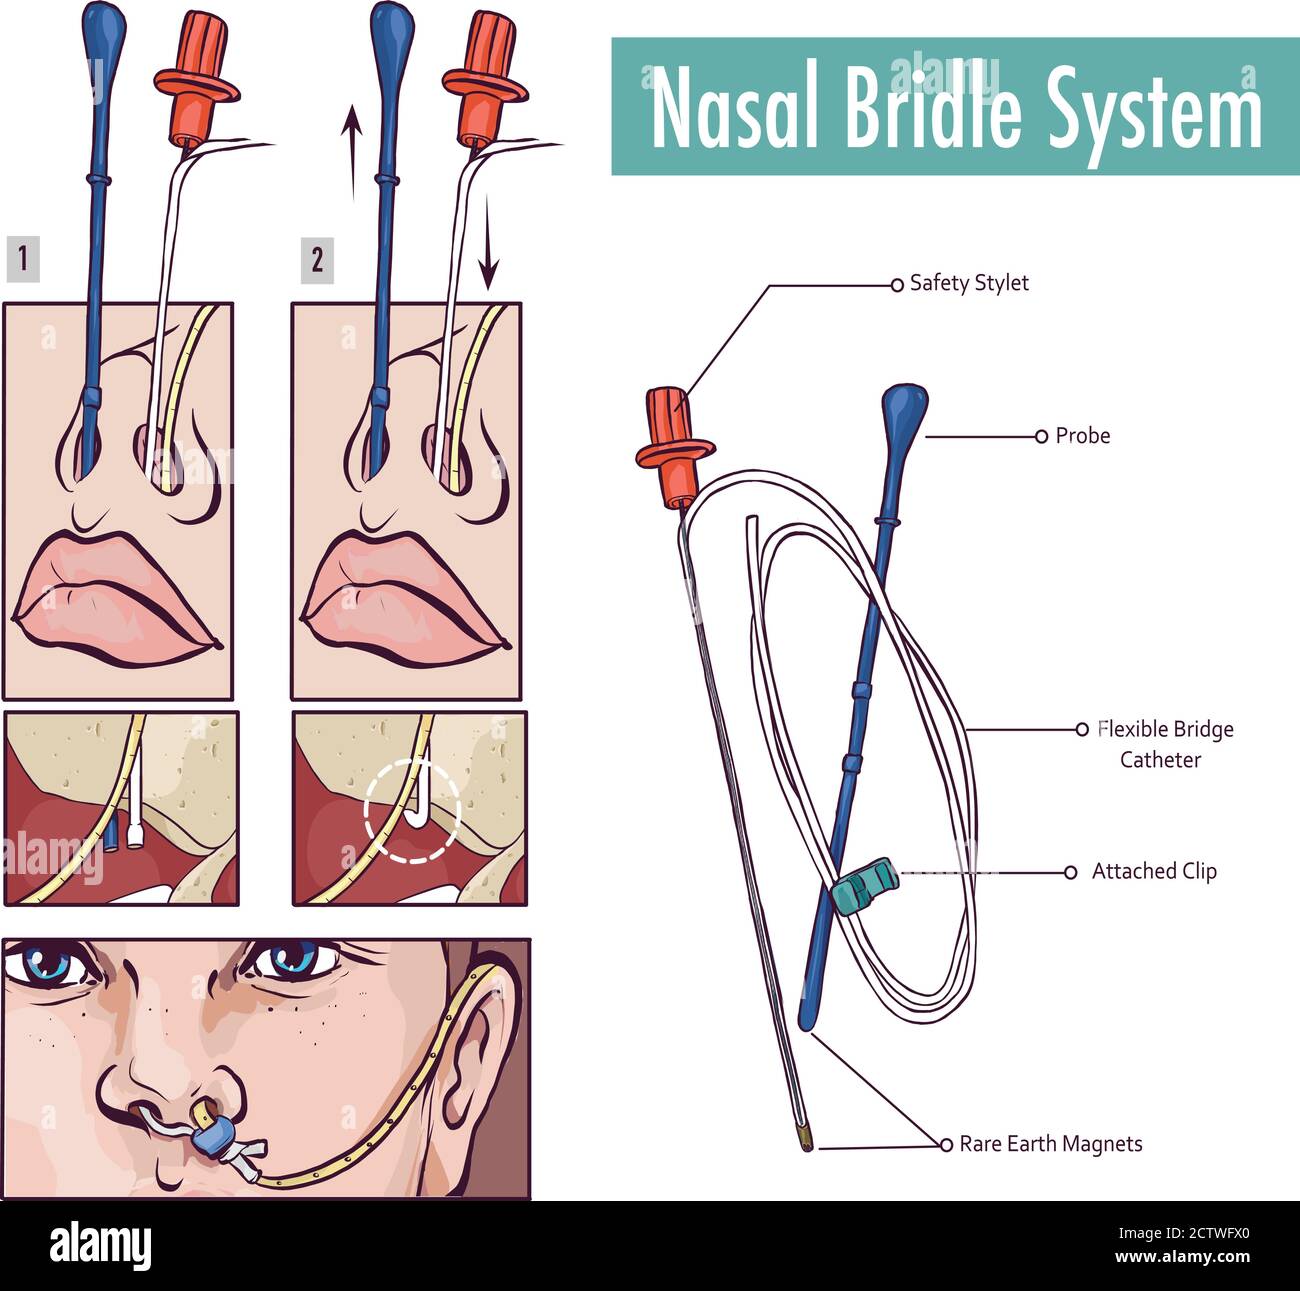 Una briglia nasale che fissa un tubo nasogastrico al nasale setto per evitare l'estrazione accidentale Illustrazione Vettoriale